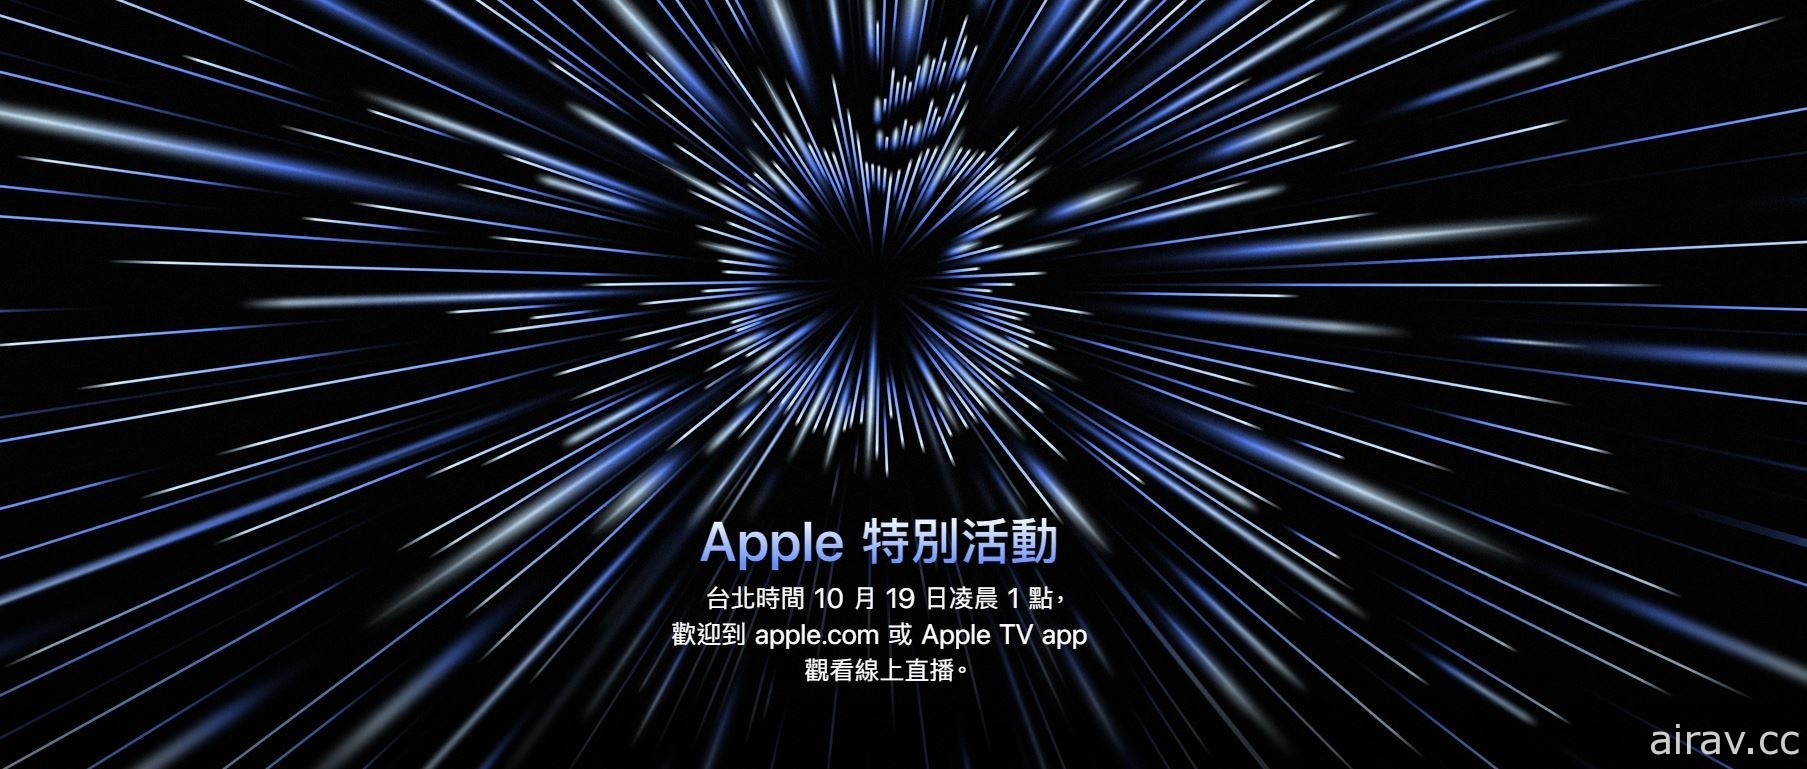 蘋果第二場秋季發表會將於 10 月 19 日登場 主題為「Unleashed」